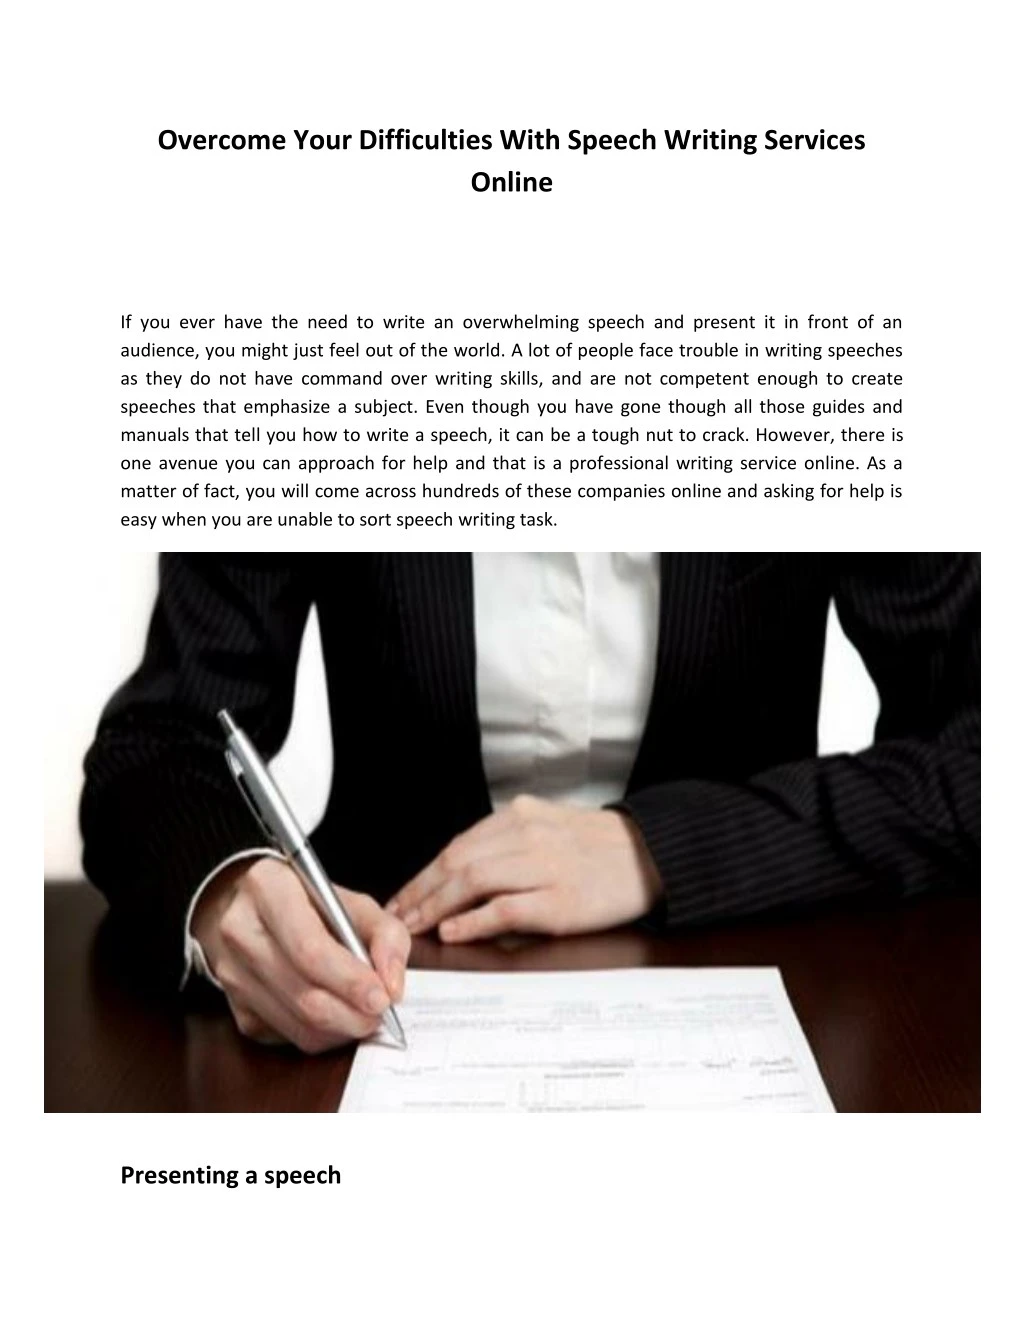 speech writing services online